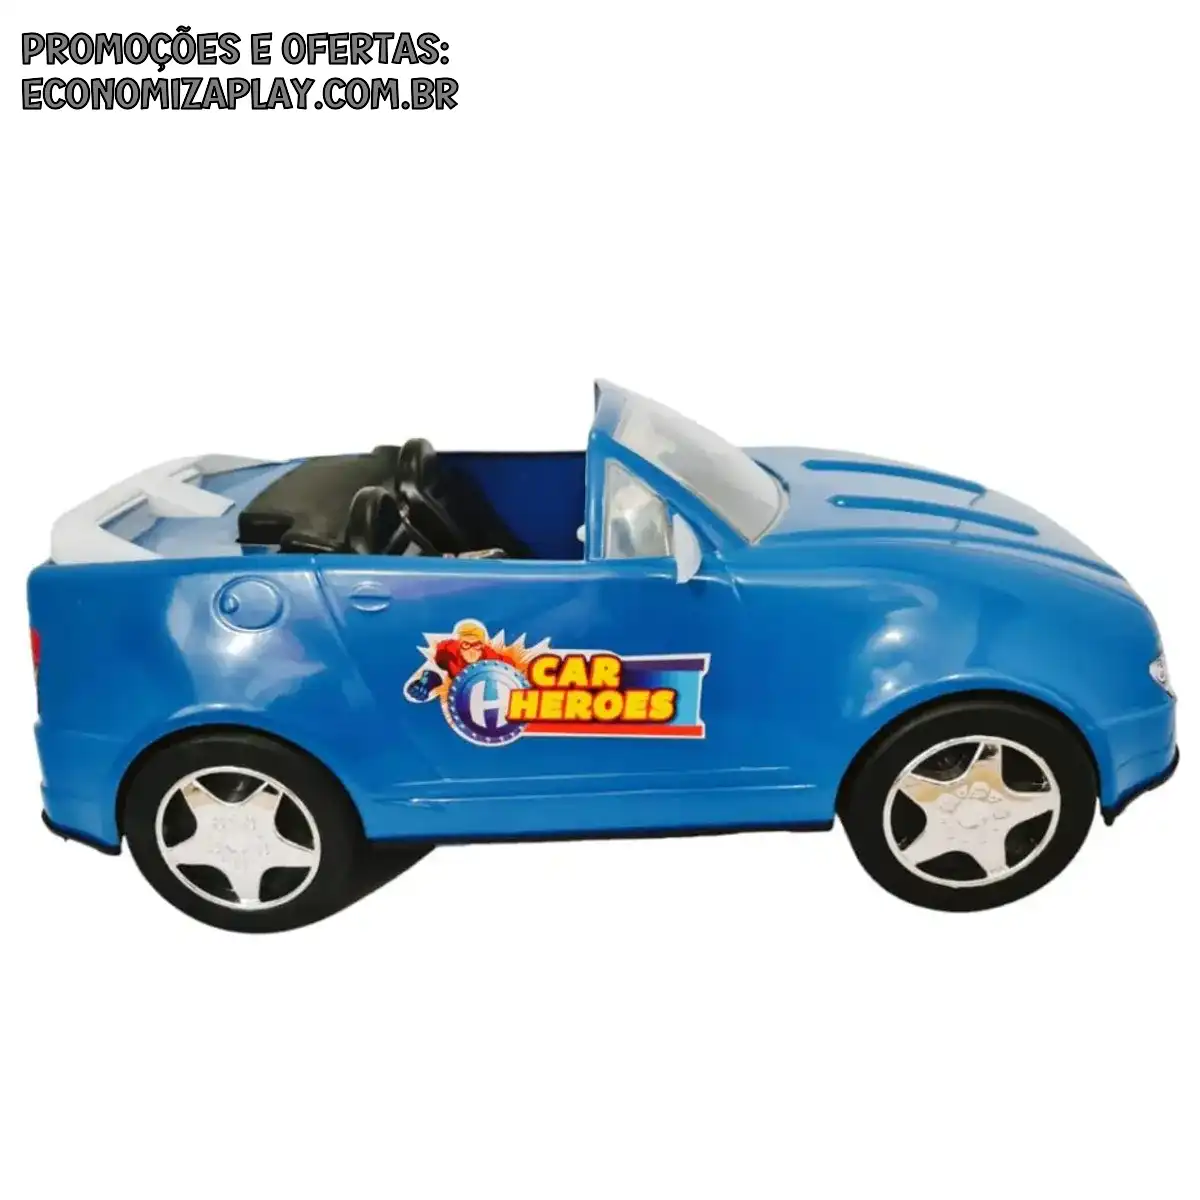 Carro Conversível Azul de Brinquedo cabe dois Boneco tipo ken